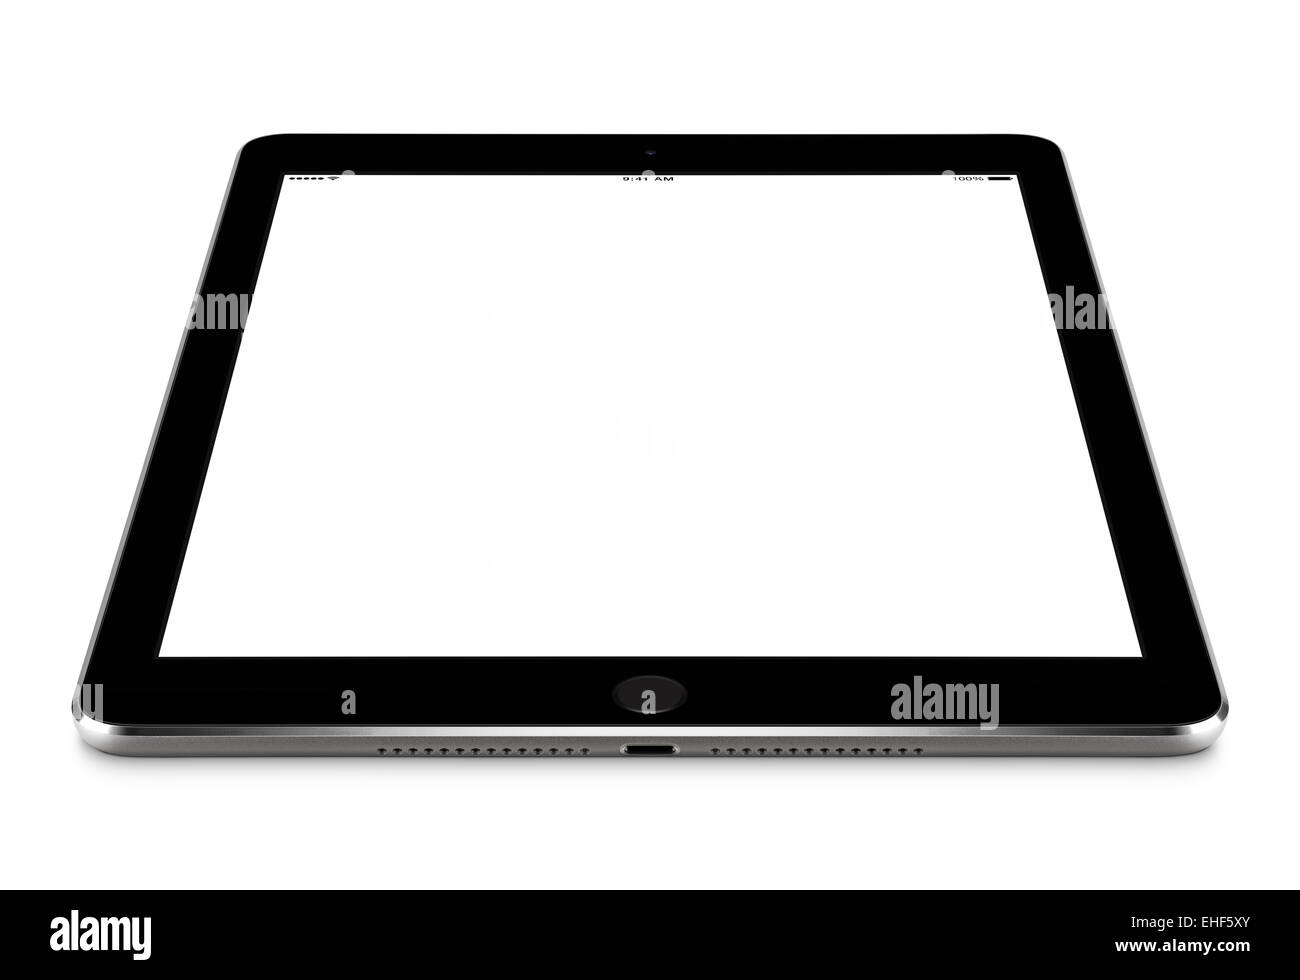 L'angle de vue avant de l'ordinateur tablette noir avec écran vide immersive sur la surface, isolé sur fond blanc. Banque D'Images